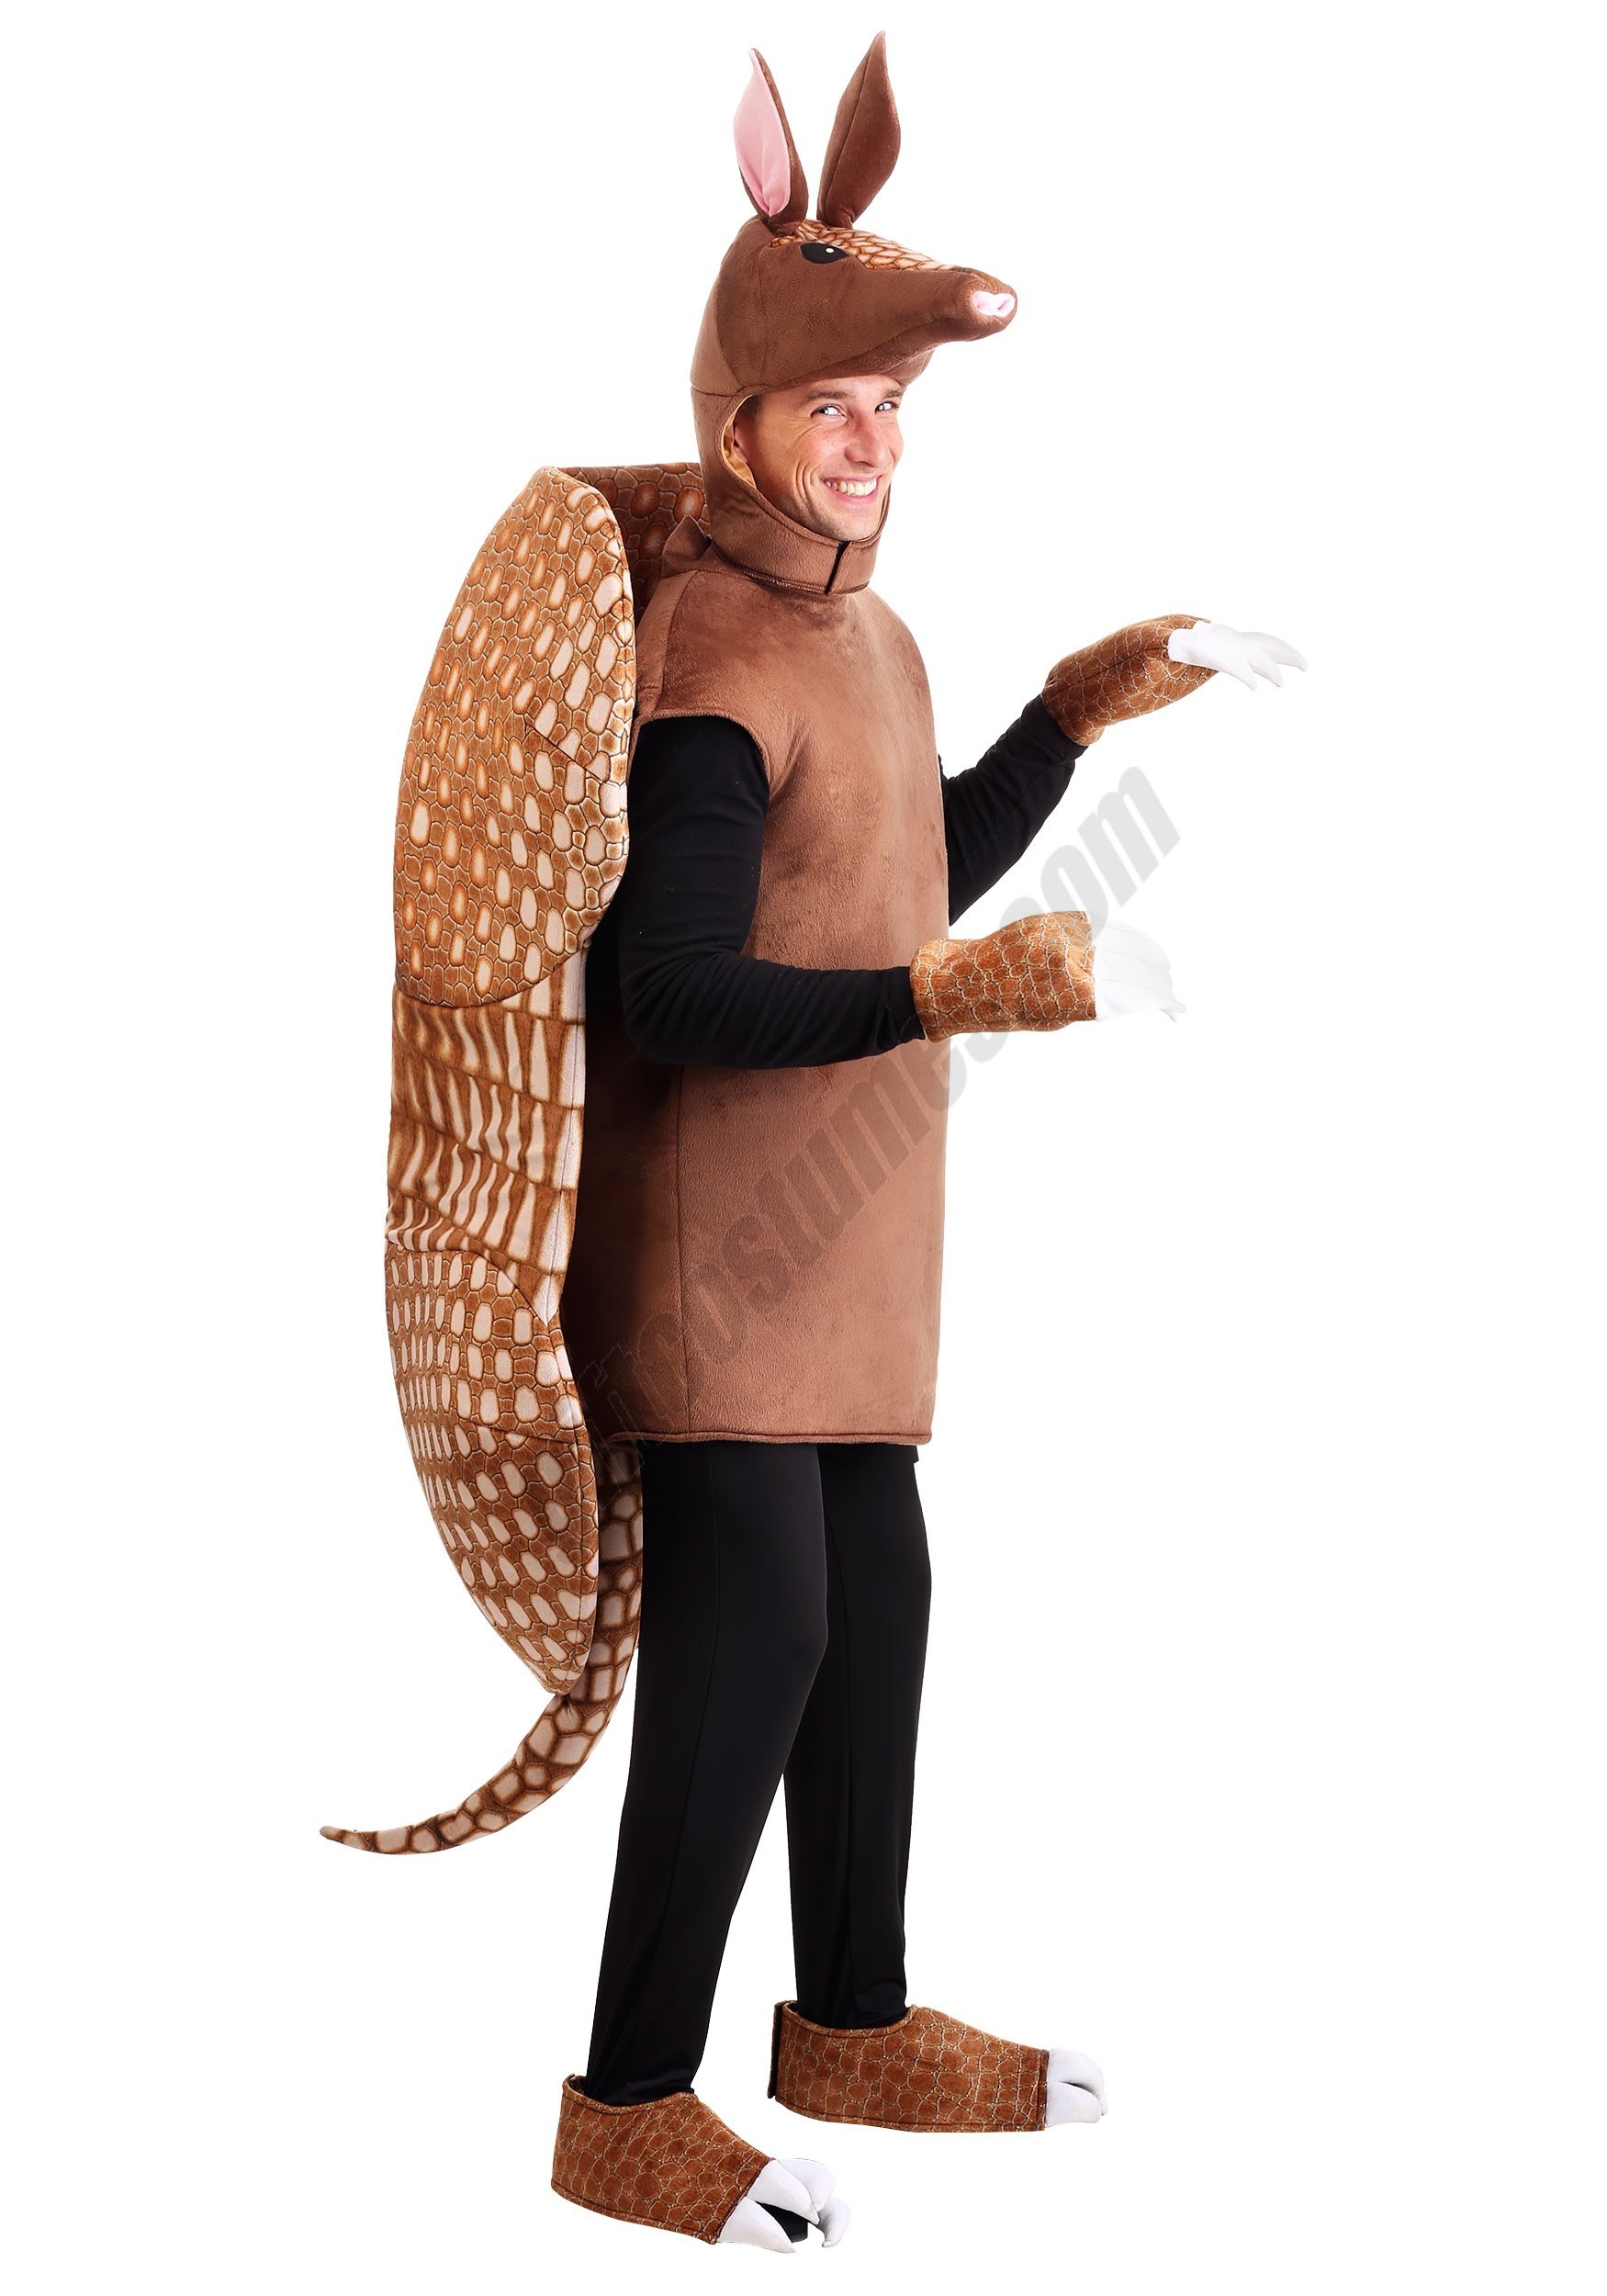 Armadillo Costume for Adults - Men's - Armadillo Costume for Adults - Men's